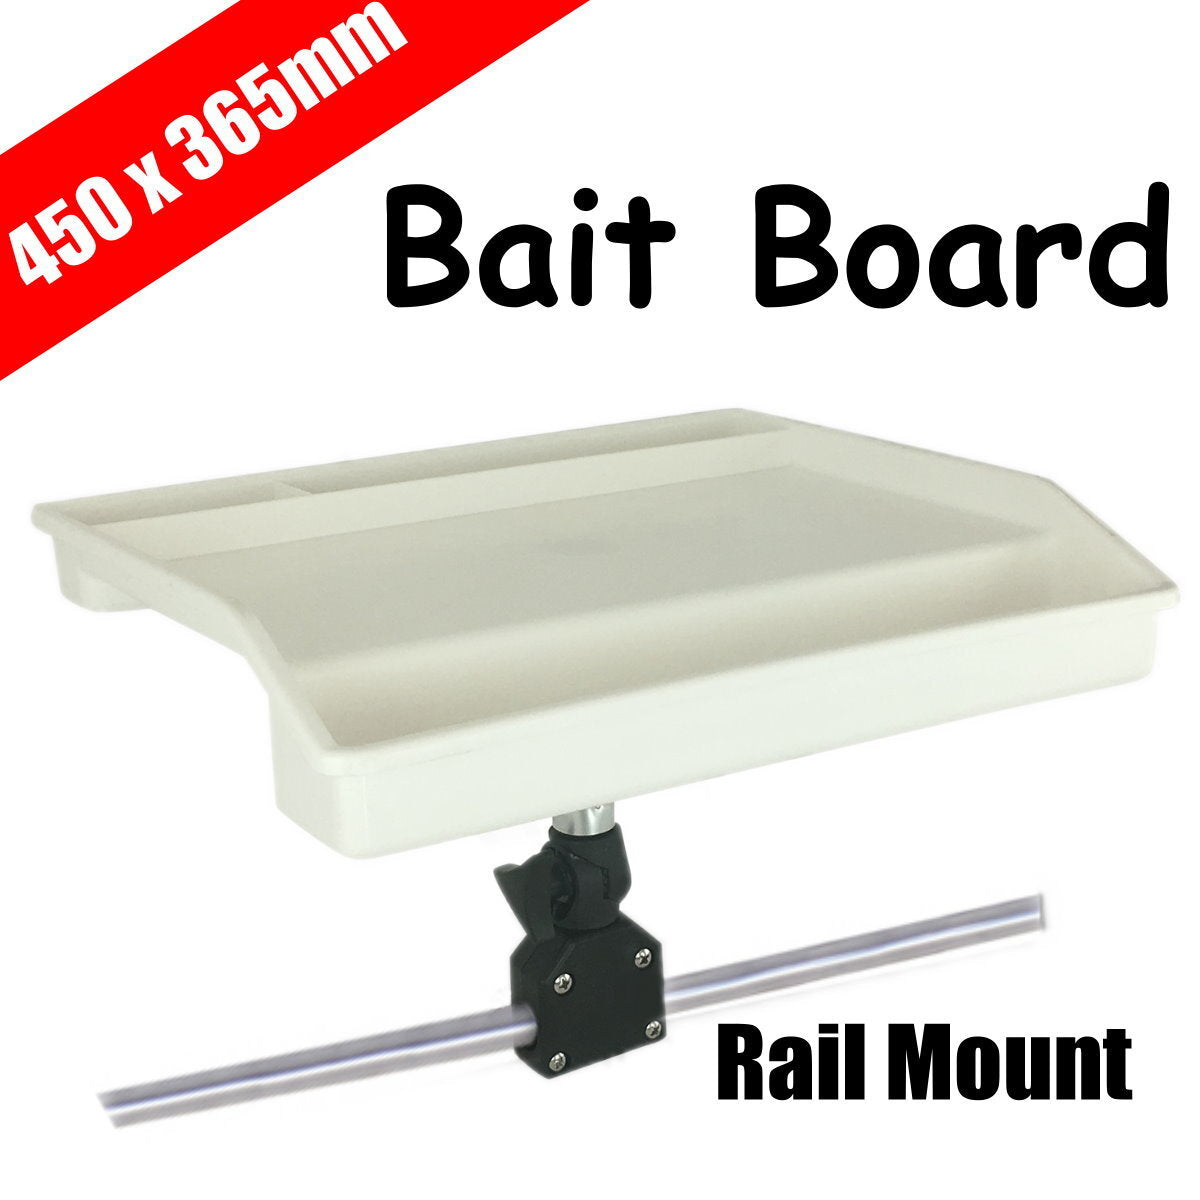 Standard Bait Board 450 x 365mm - Rail Mount